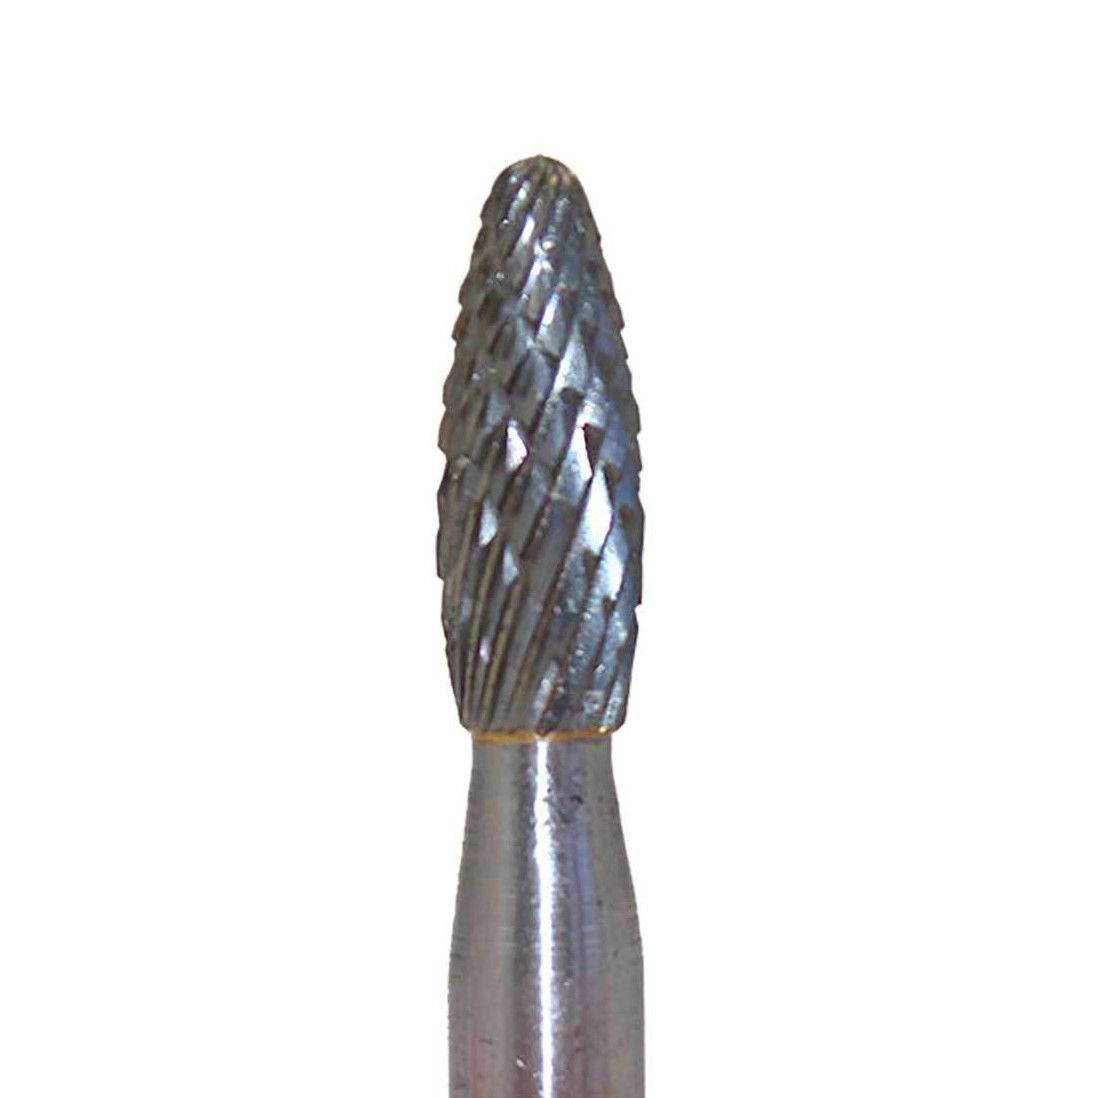 Tungsten Steel Solid Carbide Burrs 6mm Rotary Drill Die Grinder Bit - TDRMOTO